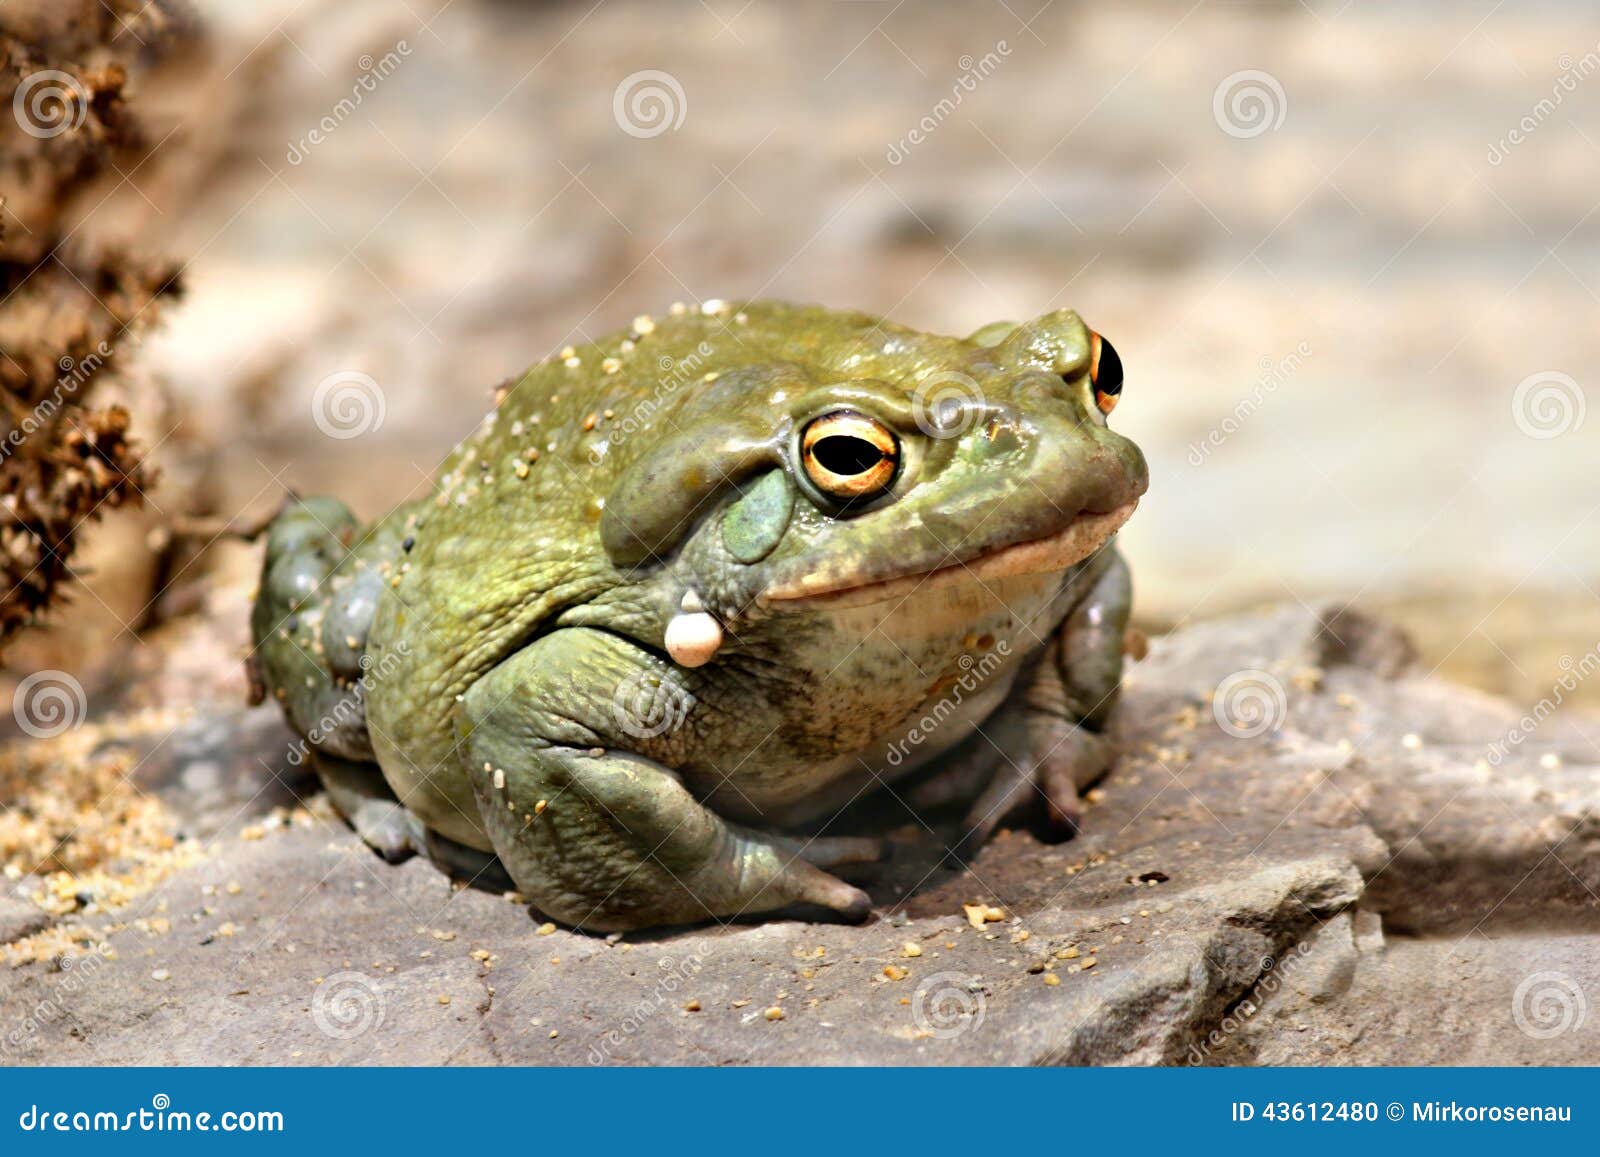 colorado river toad incilius bufo alvarius